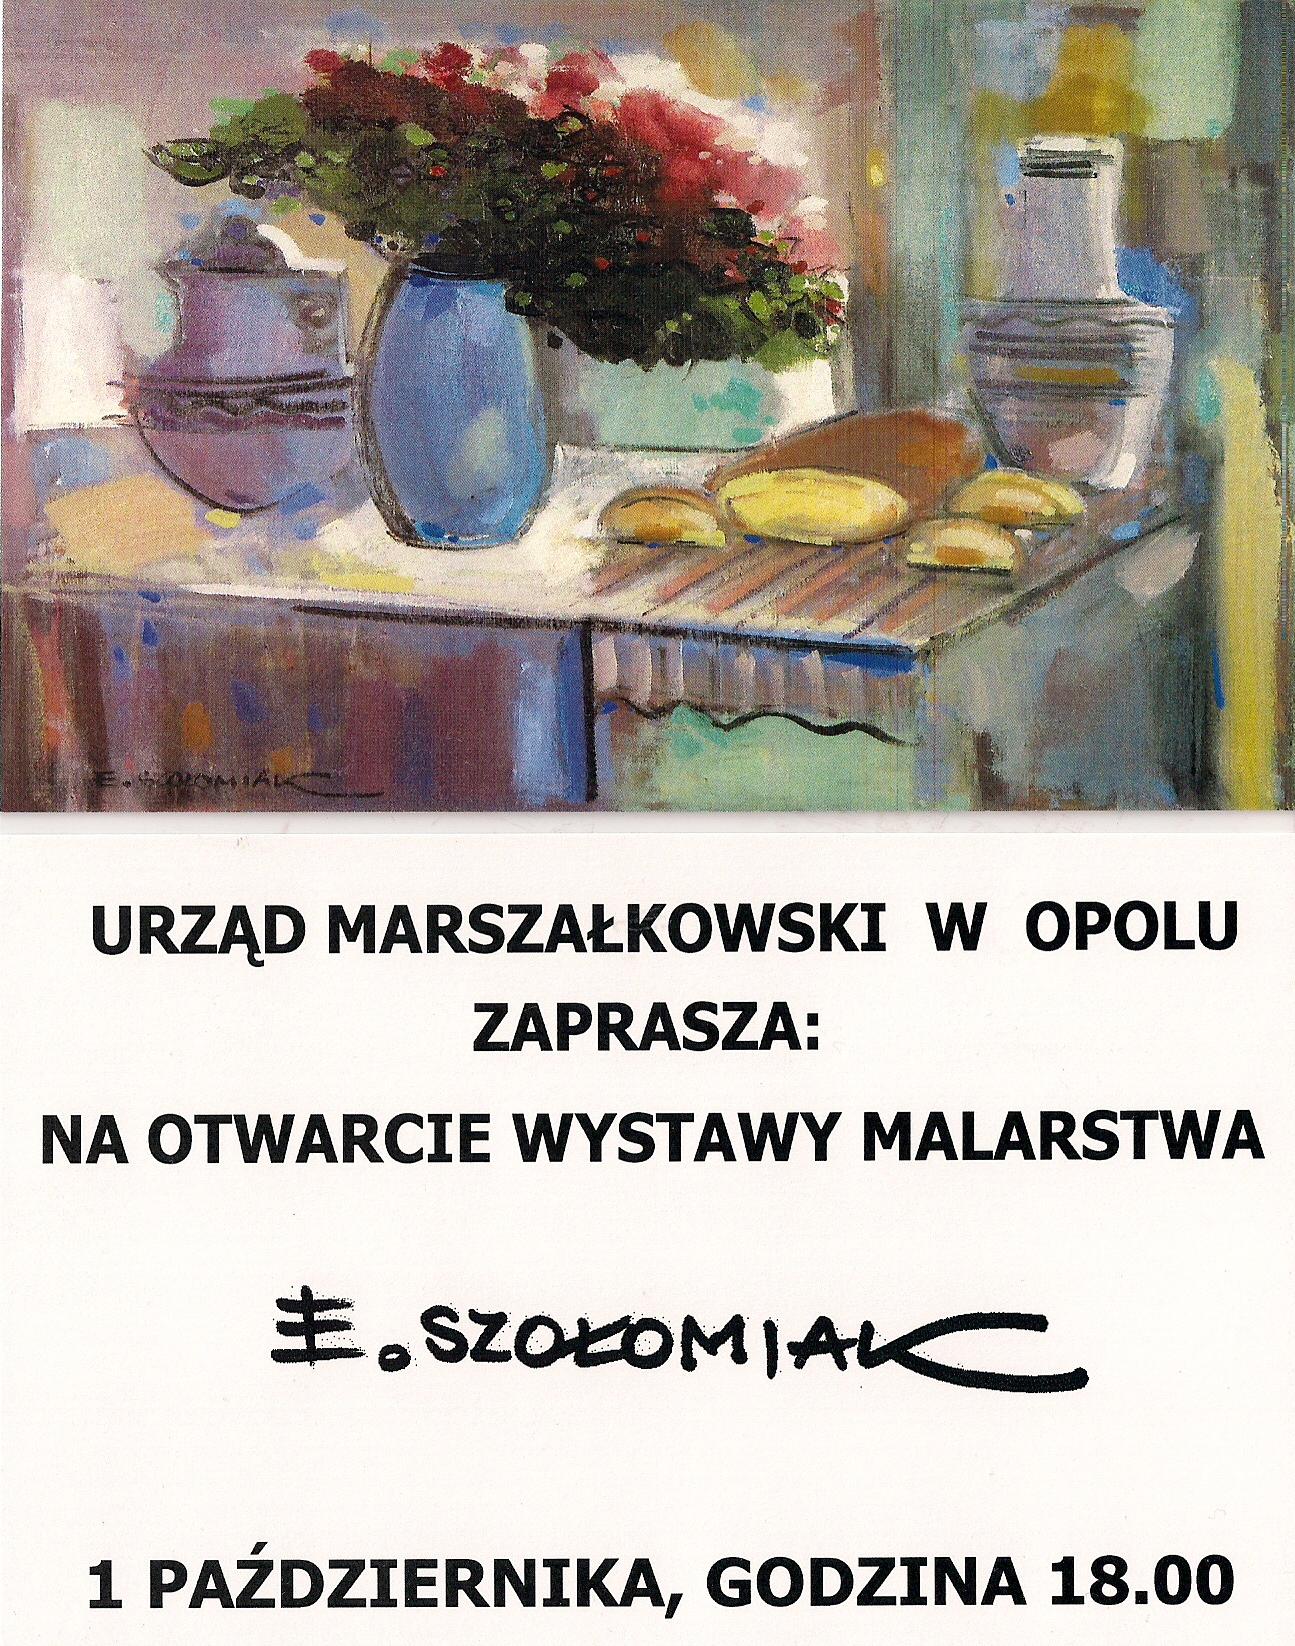 Elżbieta Szołomiak - zaproszenie (źródło: materiał prasowy organizatora)